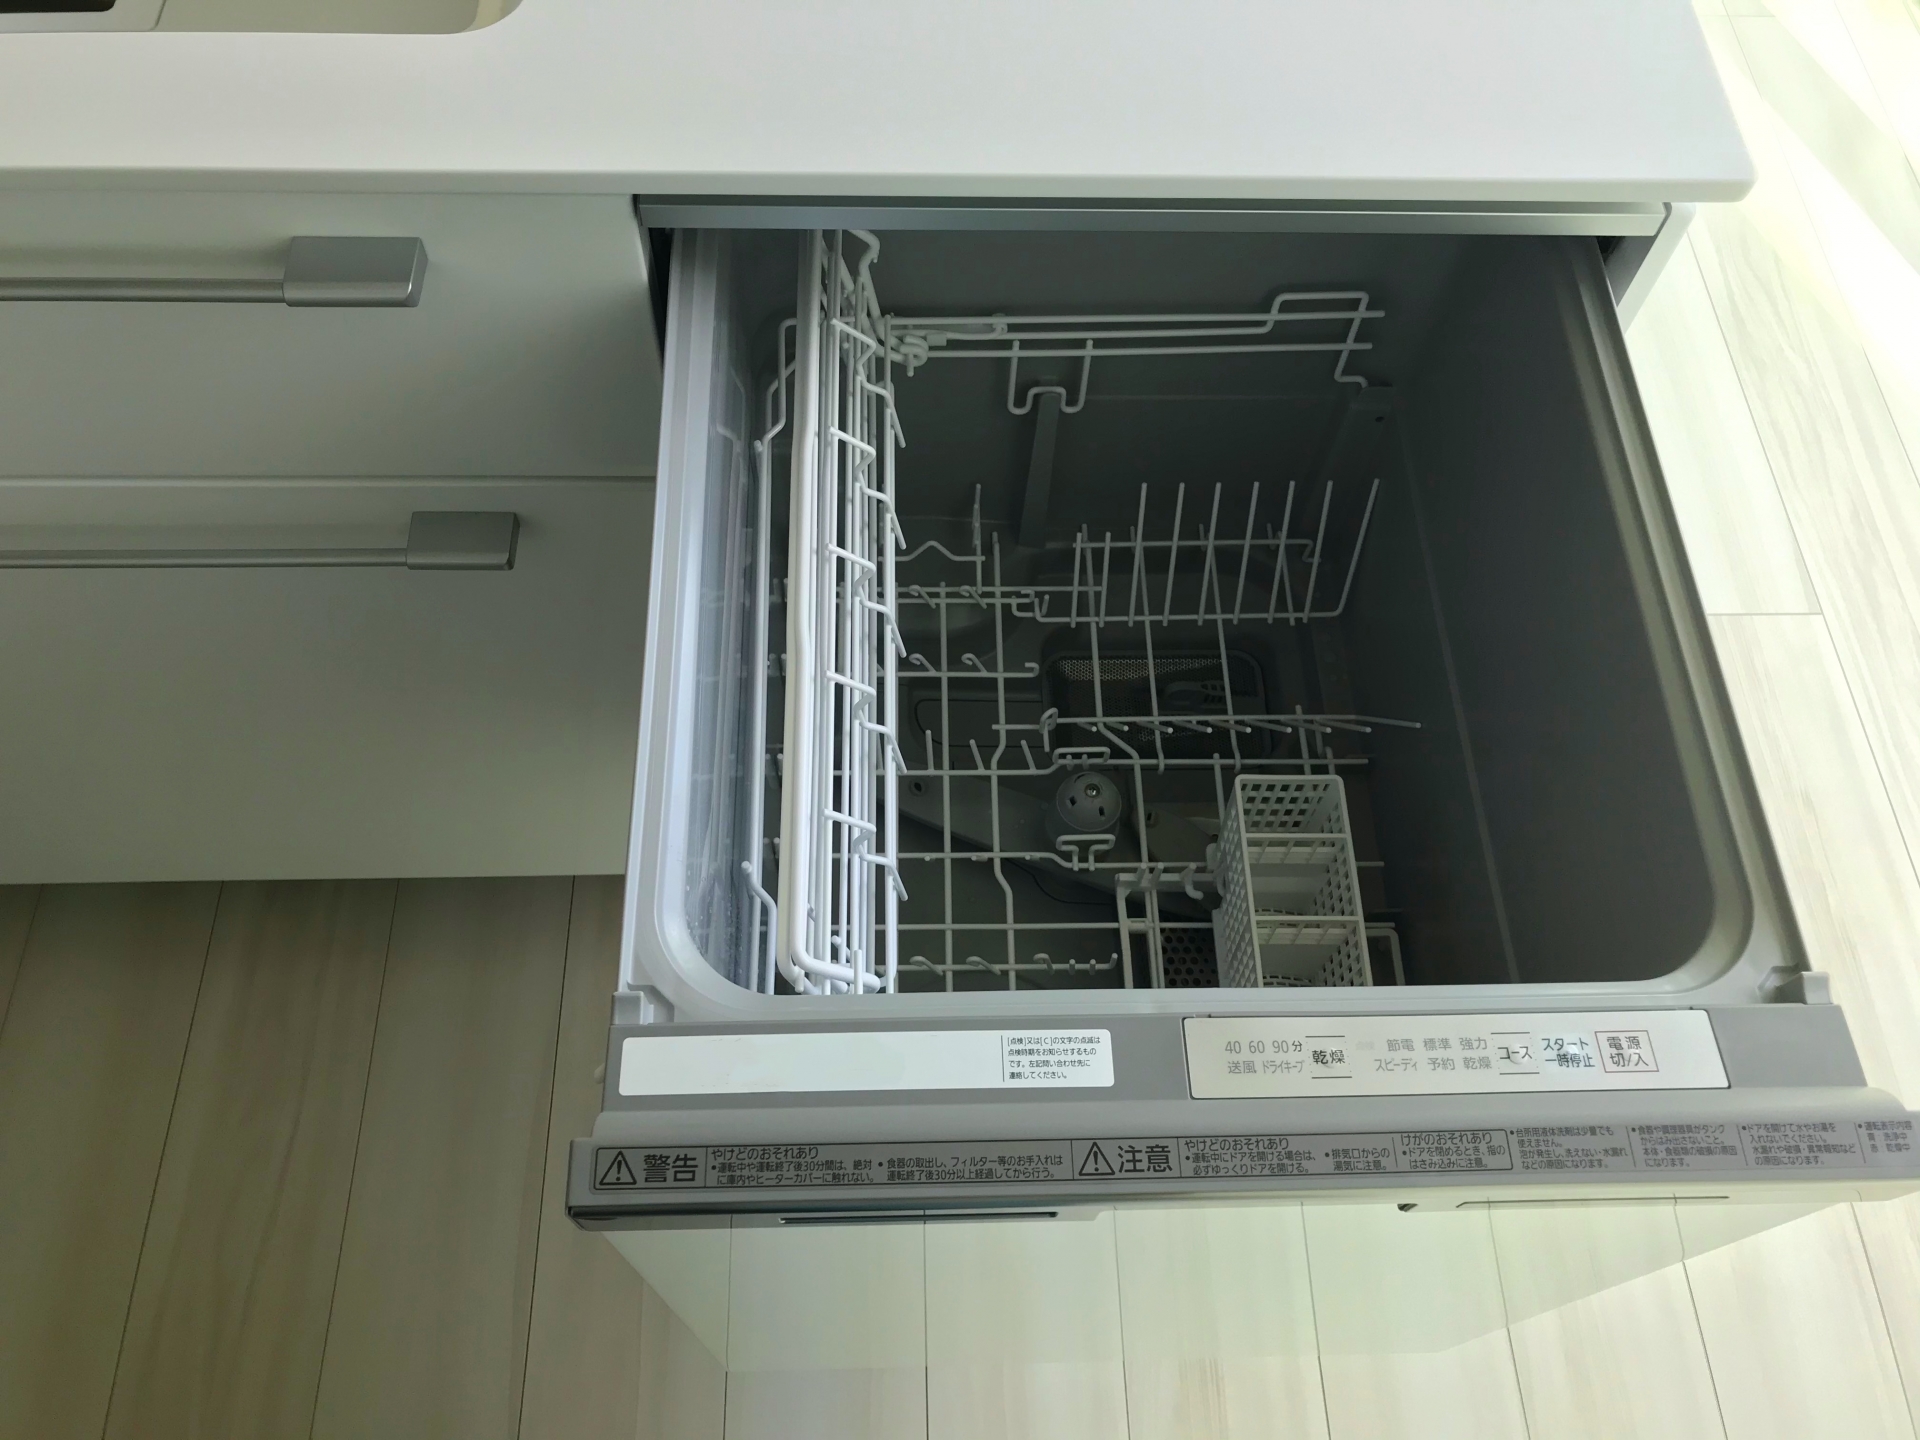 59878円 品質一番の パナソニック 食洗器 ビルトイン食器洗い乾燥機 NP-45MD9S M9シリーズ シルバー ドアパネル型 ※ドアパネルは別売です ディープタイプ あす楽